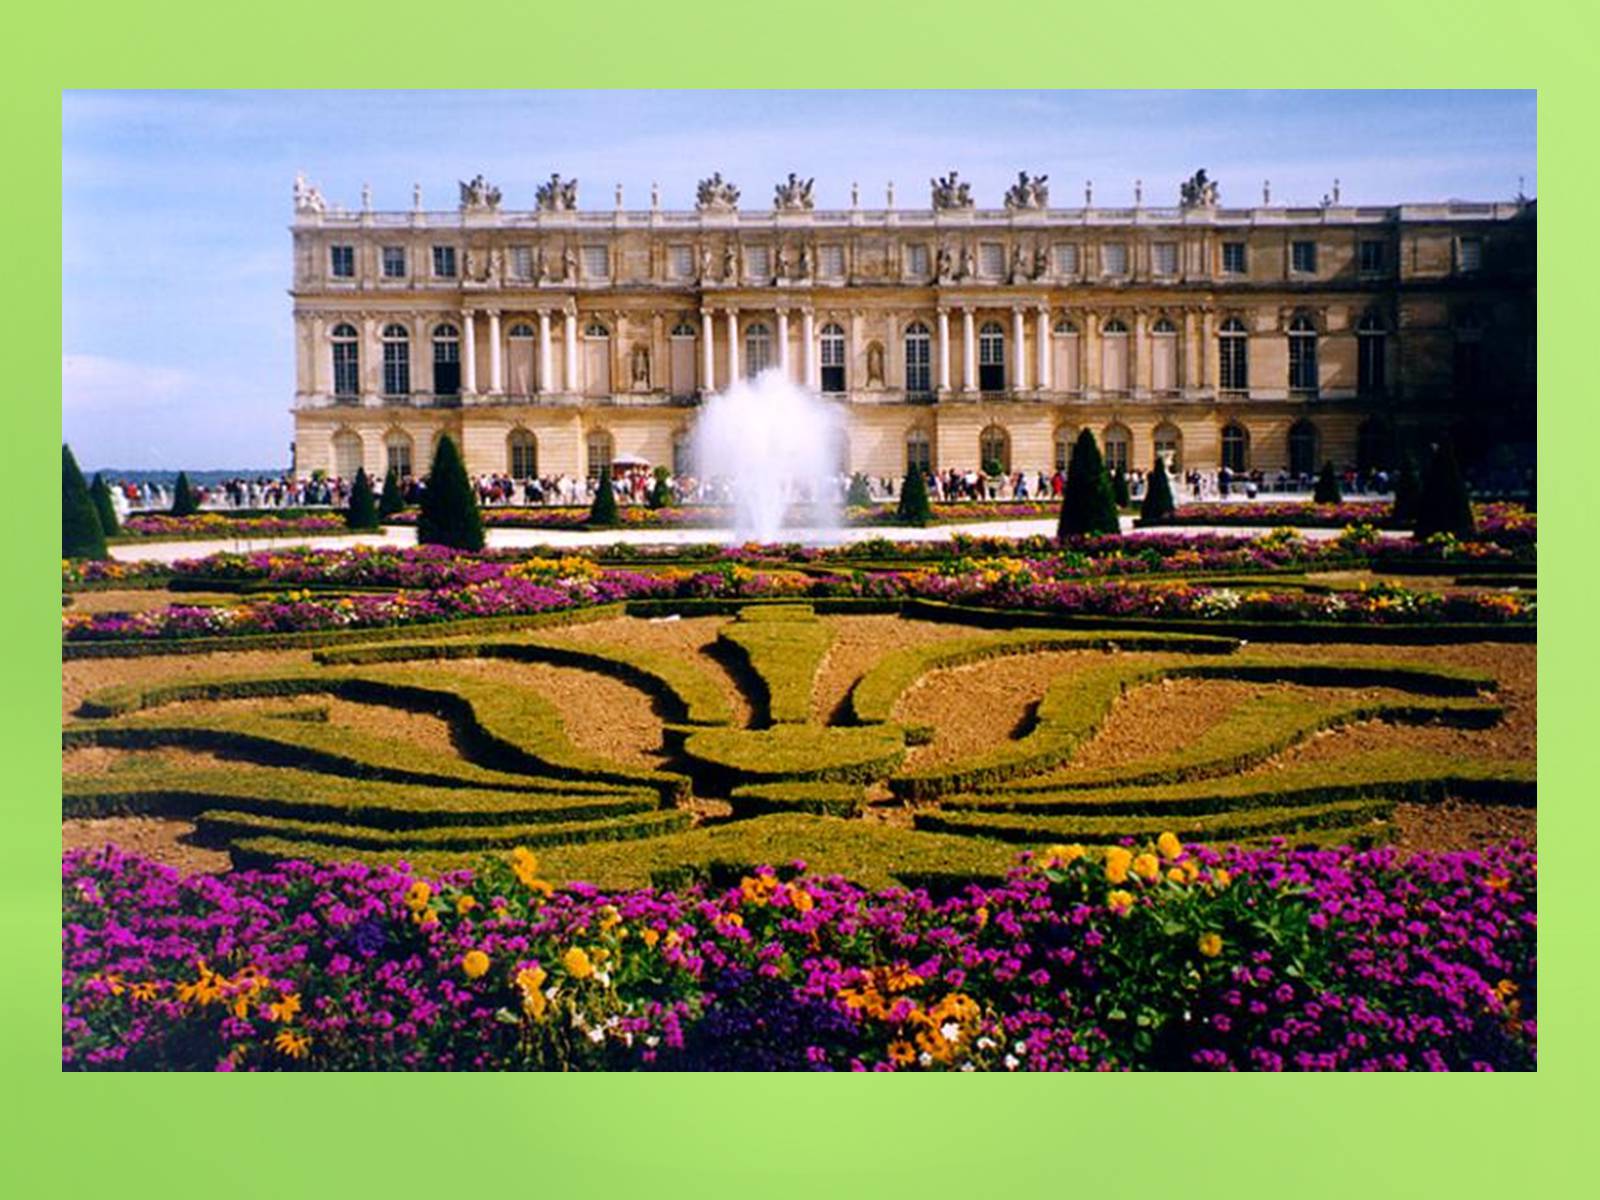 Chateau versailles. Версальский дворец Версаль Франция. Версаль дворцово-парковый ансамбль во Франции. Парковый ансамбль Версаля во Франции. Франция Версаль (в 17 км от Парижа).